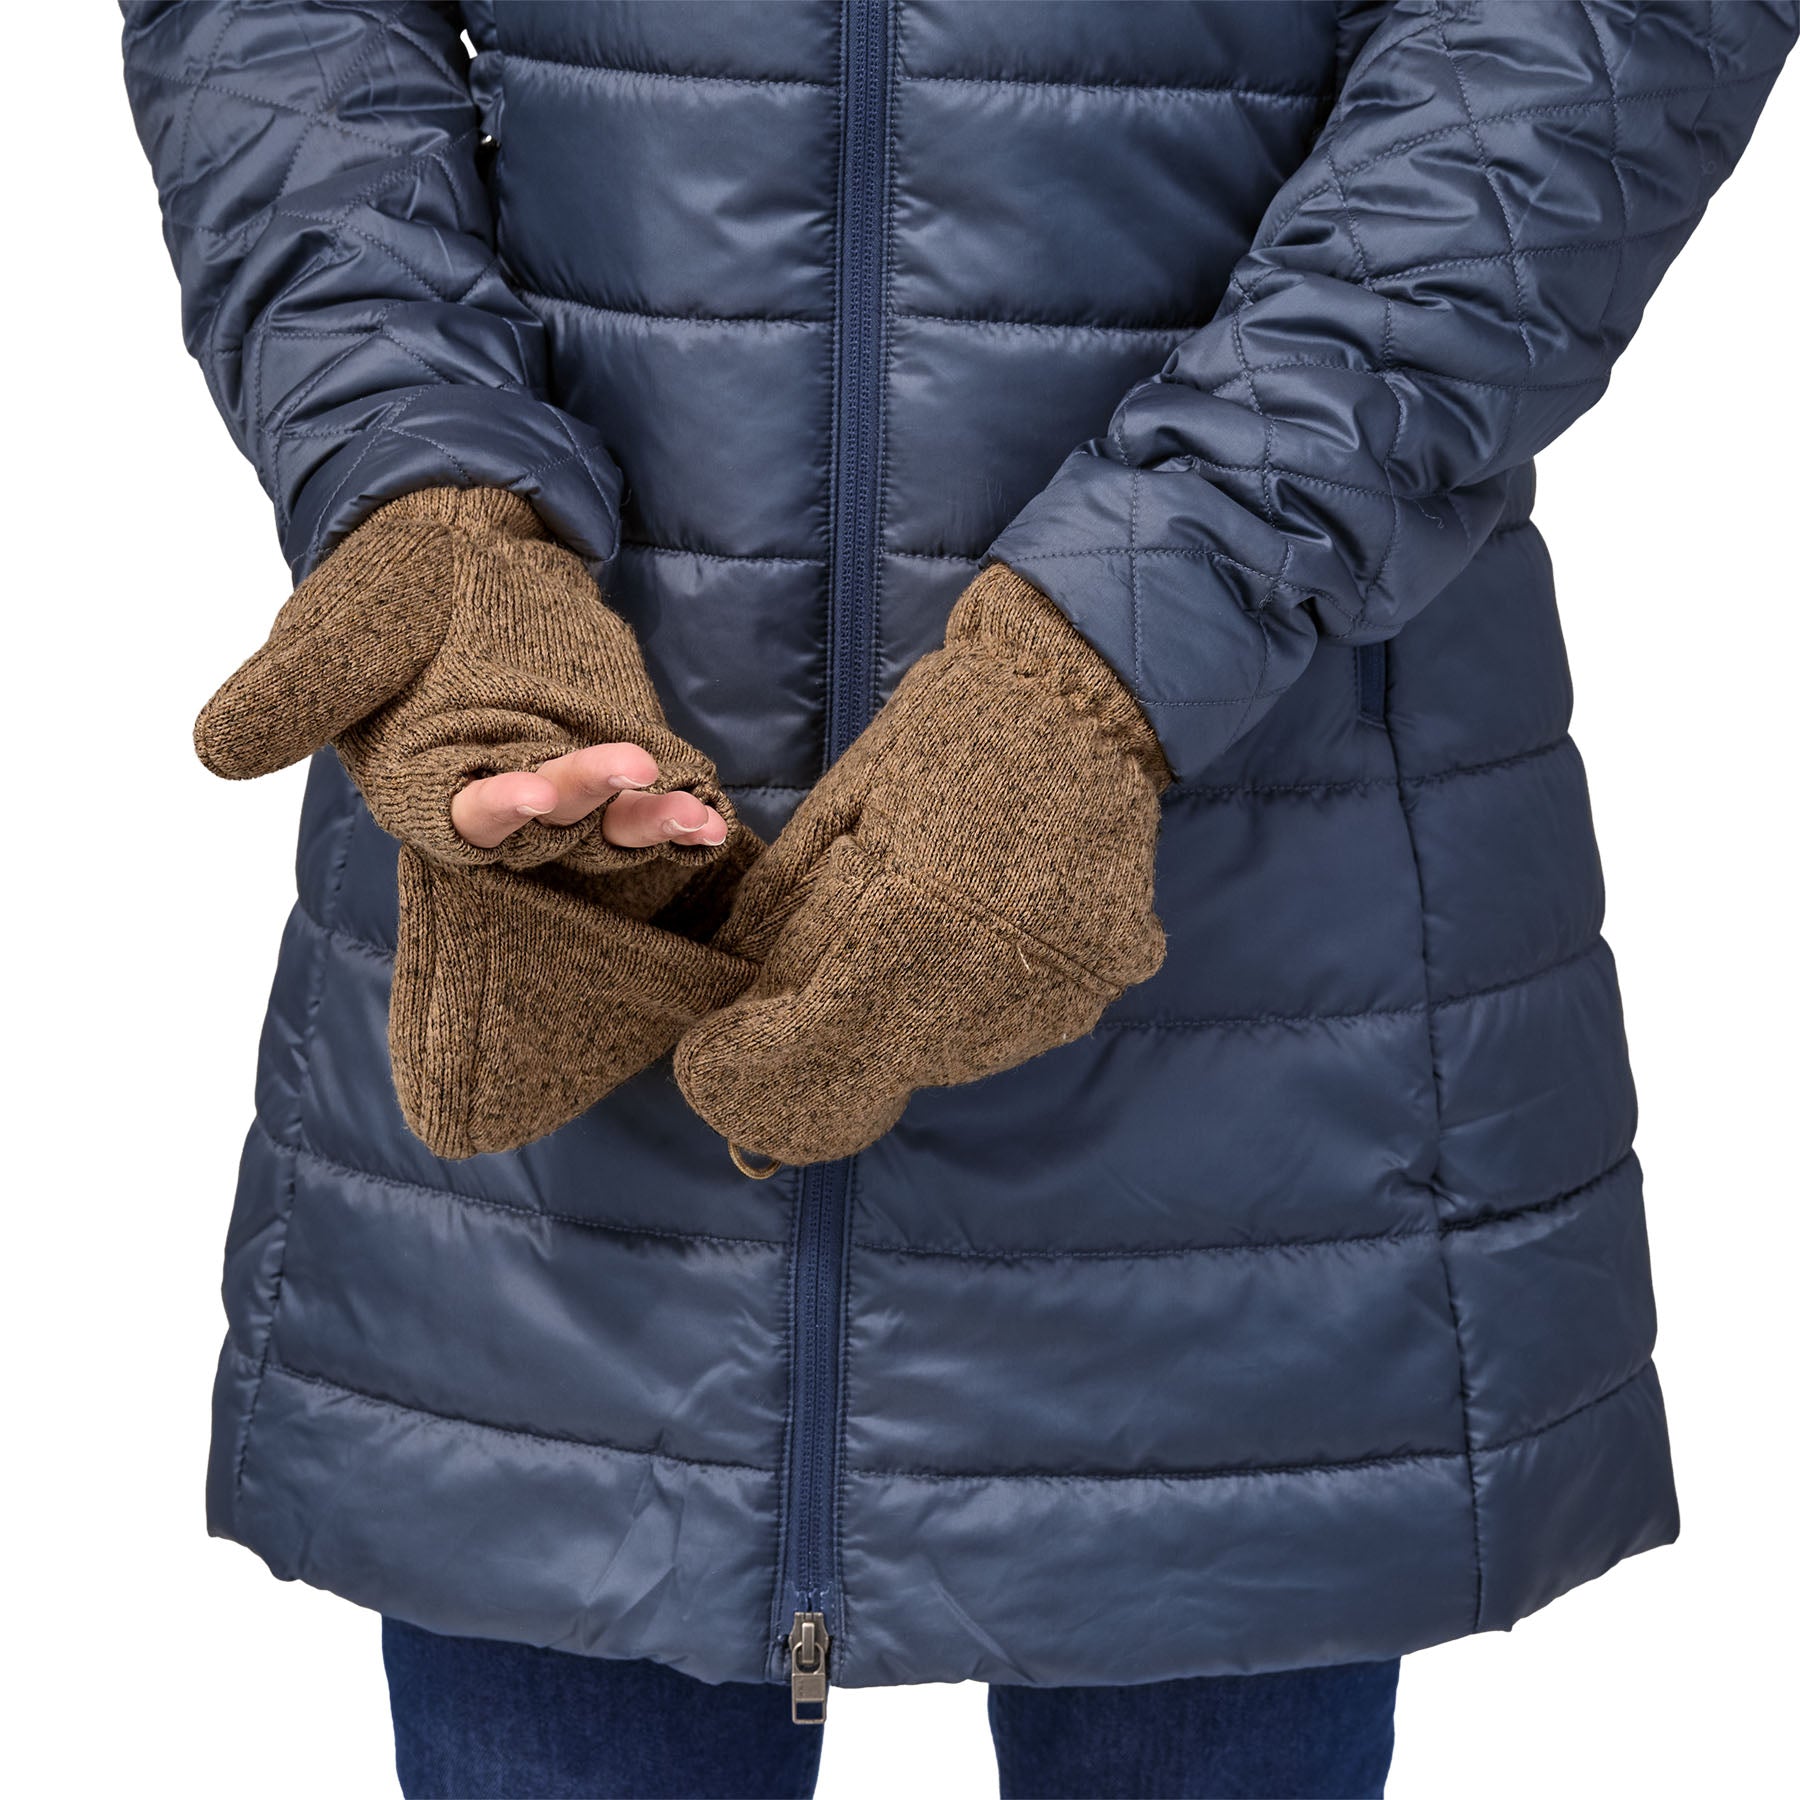 Better Sweater Gloves